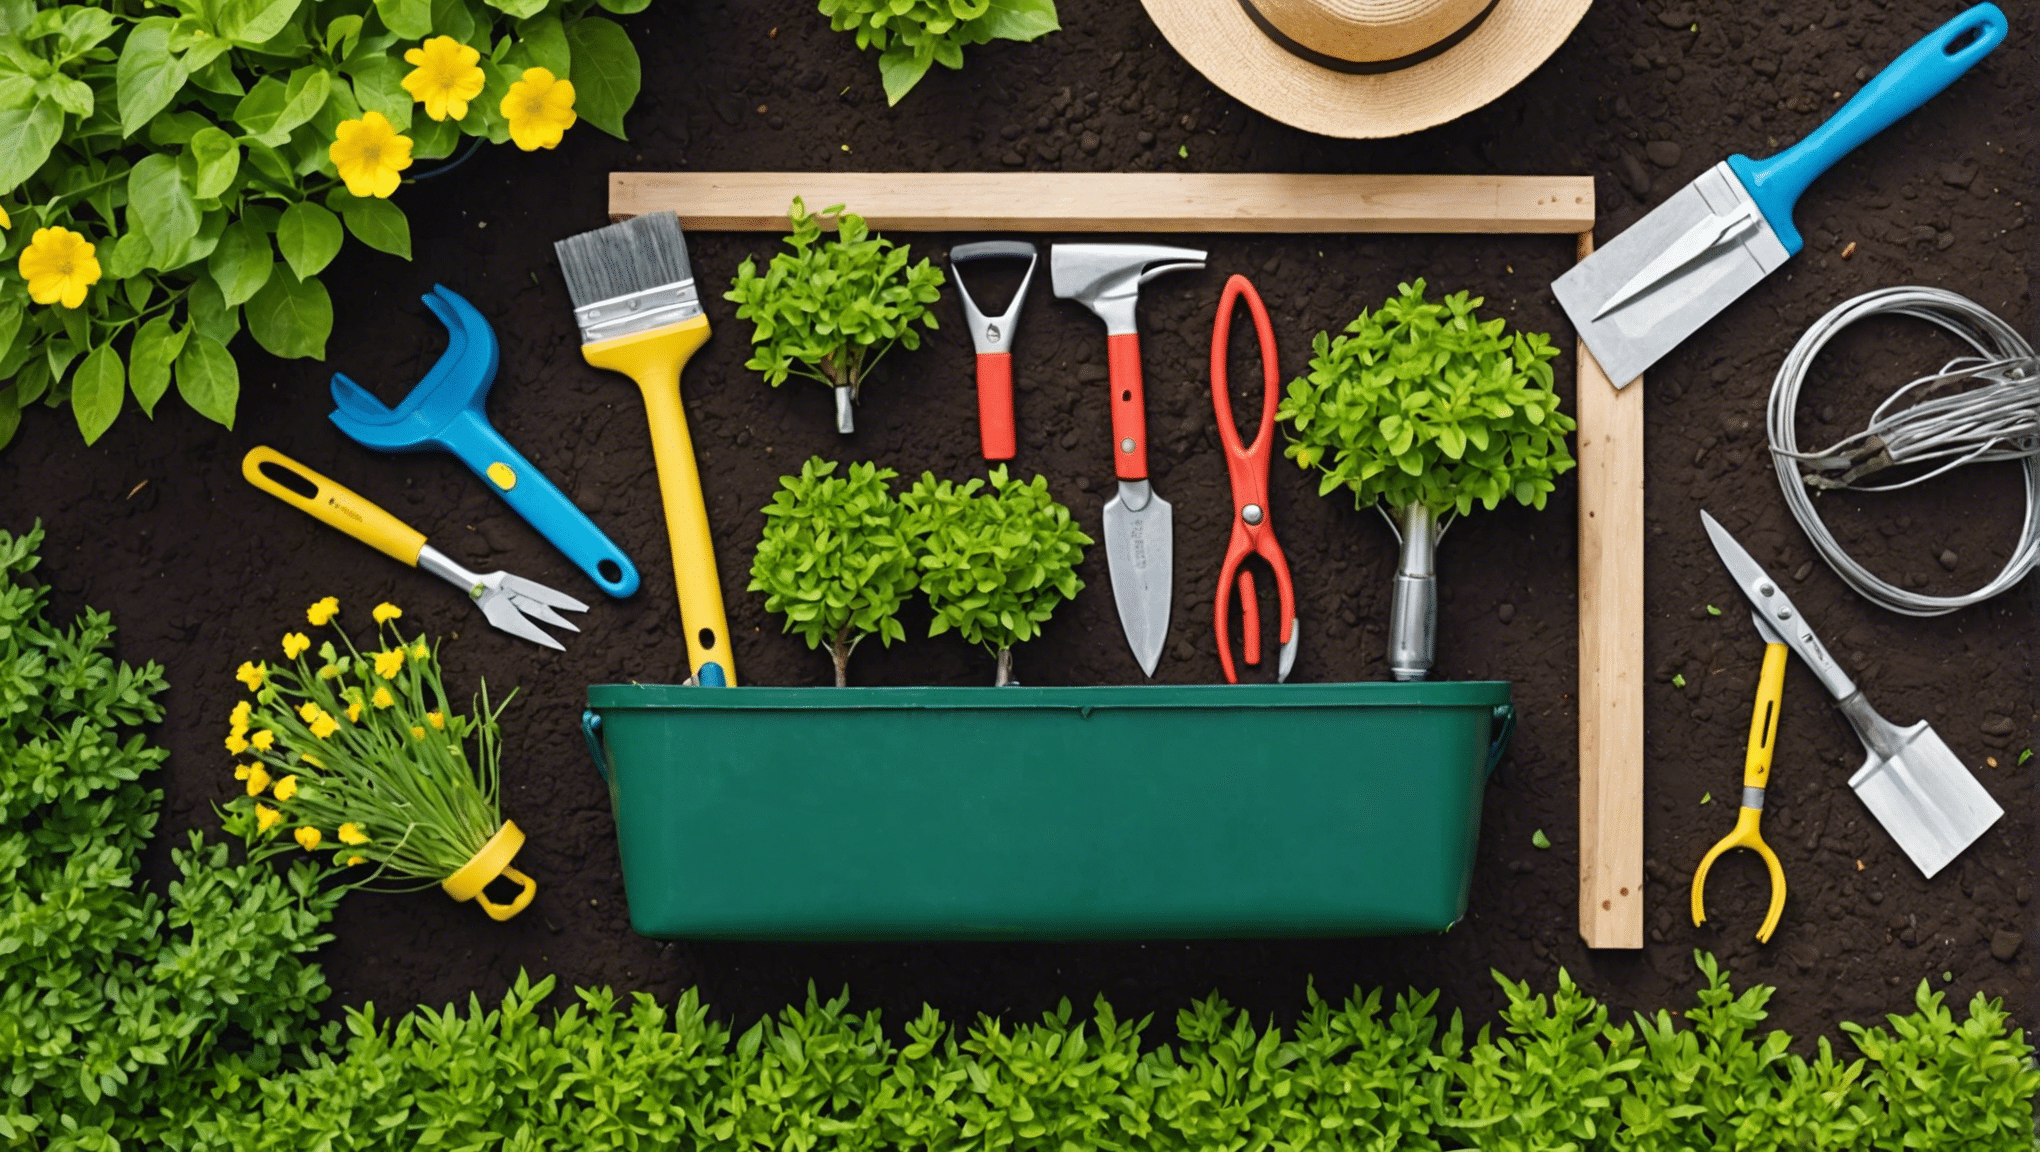 odkryj niezbędne przedmioty, które warto zapakować do swojej torby na narzędzia ogrodnicze, aby praca w ogrodzie była przyjemniejsza i wydajniejsza. od nożyc do przycinania po rękawiczki – dowiedz się, co jest potrzebne do udanej sesji ogrodniczej.